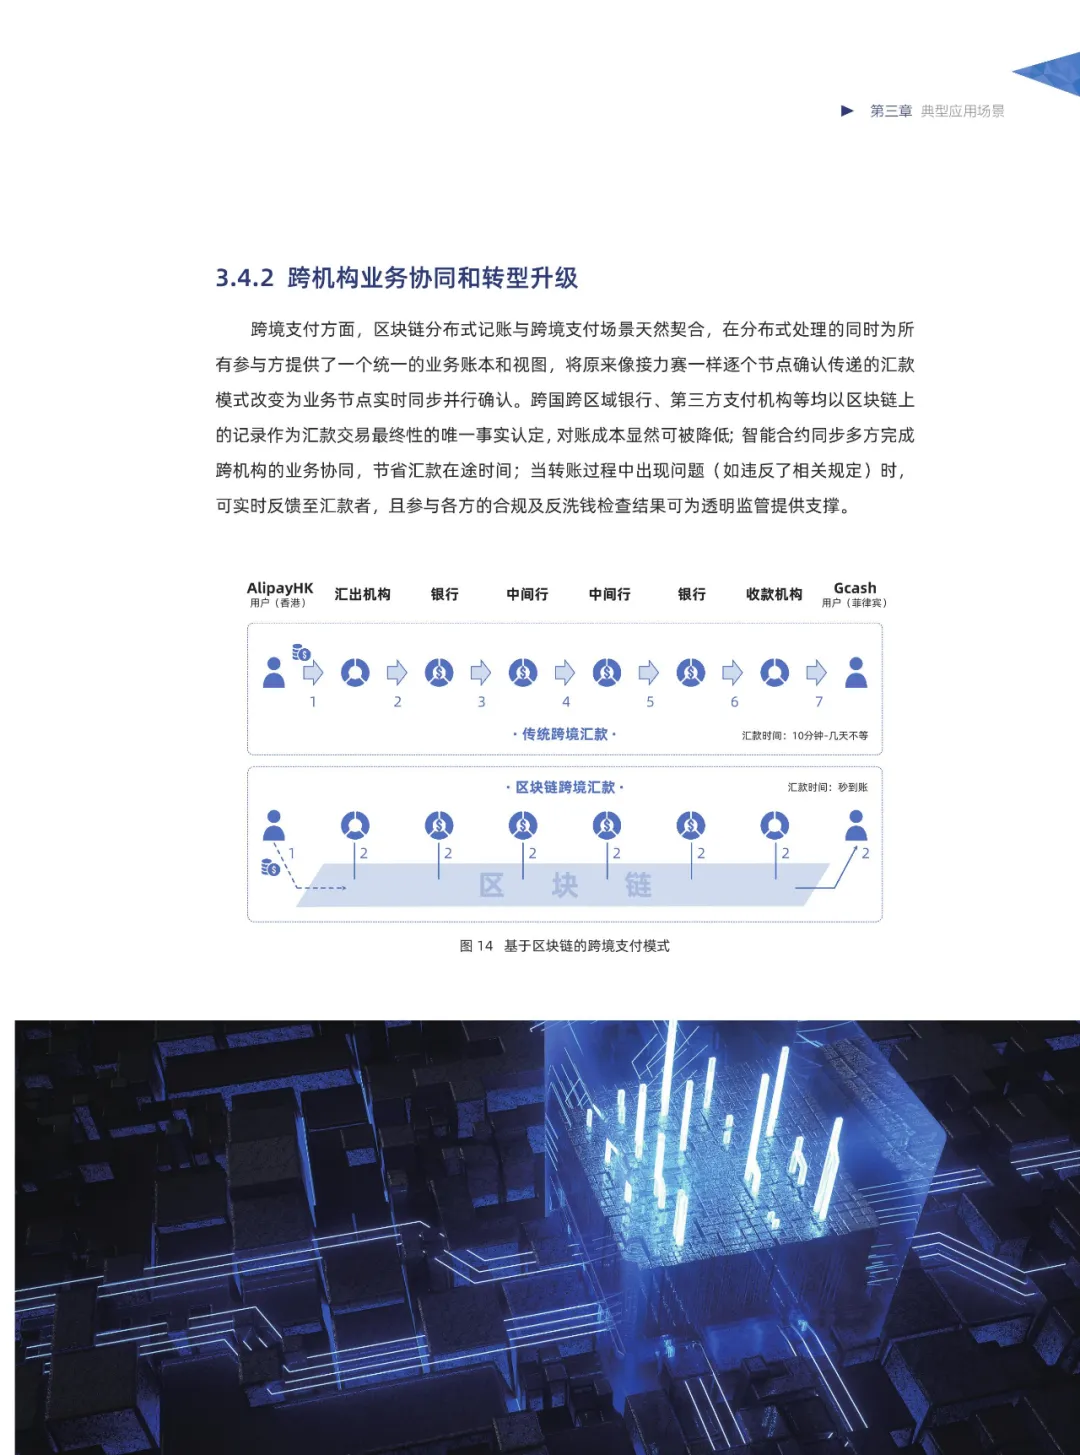 信任经济的崛起——2020中国区块链发展报告_加密算法_42